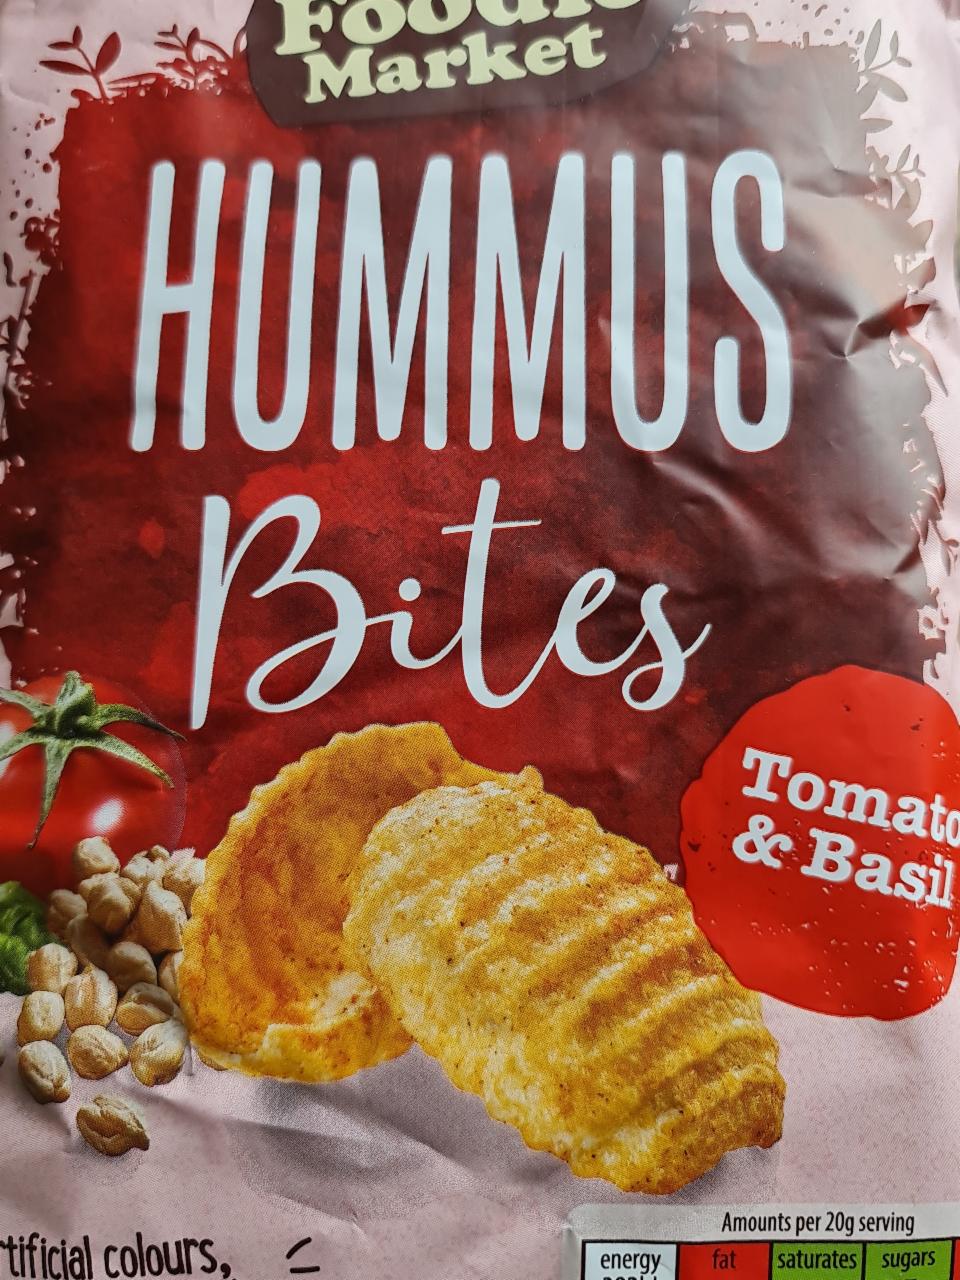 Fotografie - Hummus bites tomato & basil